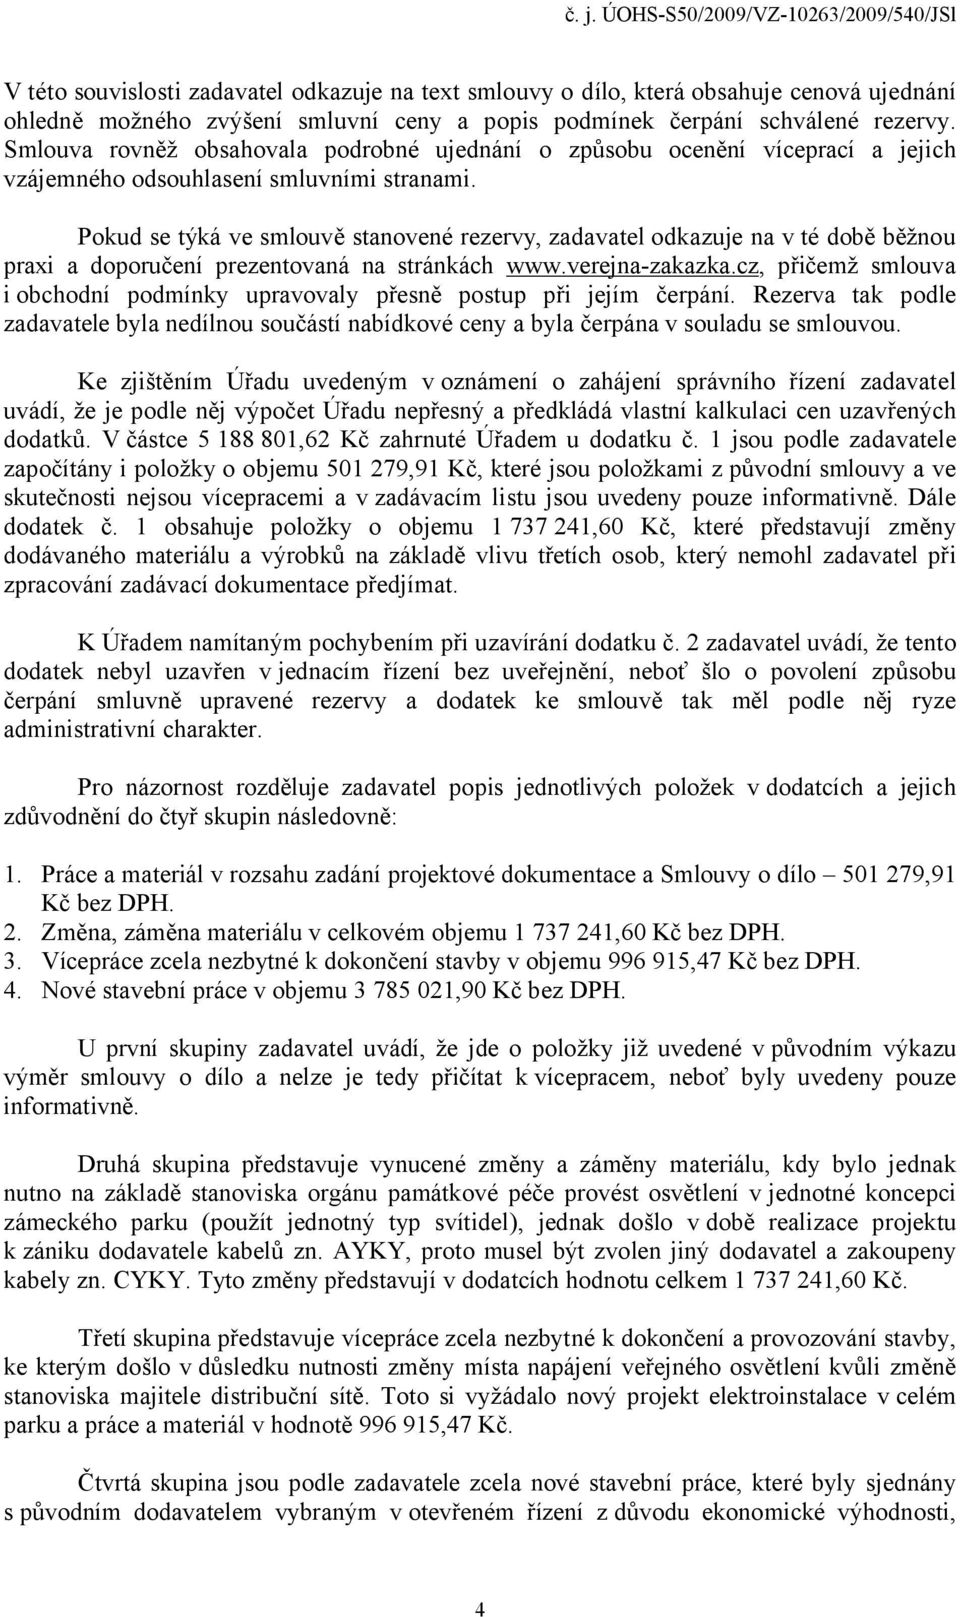 Pokud se týká ve smlouvě stanovené rezervy, zadavatel odkazuje na v té době běžnou praxi a doporučení prezentovaná na stránkách www.verejna-zakazka.